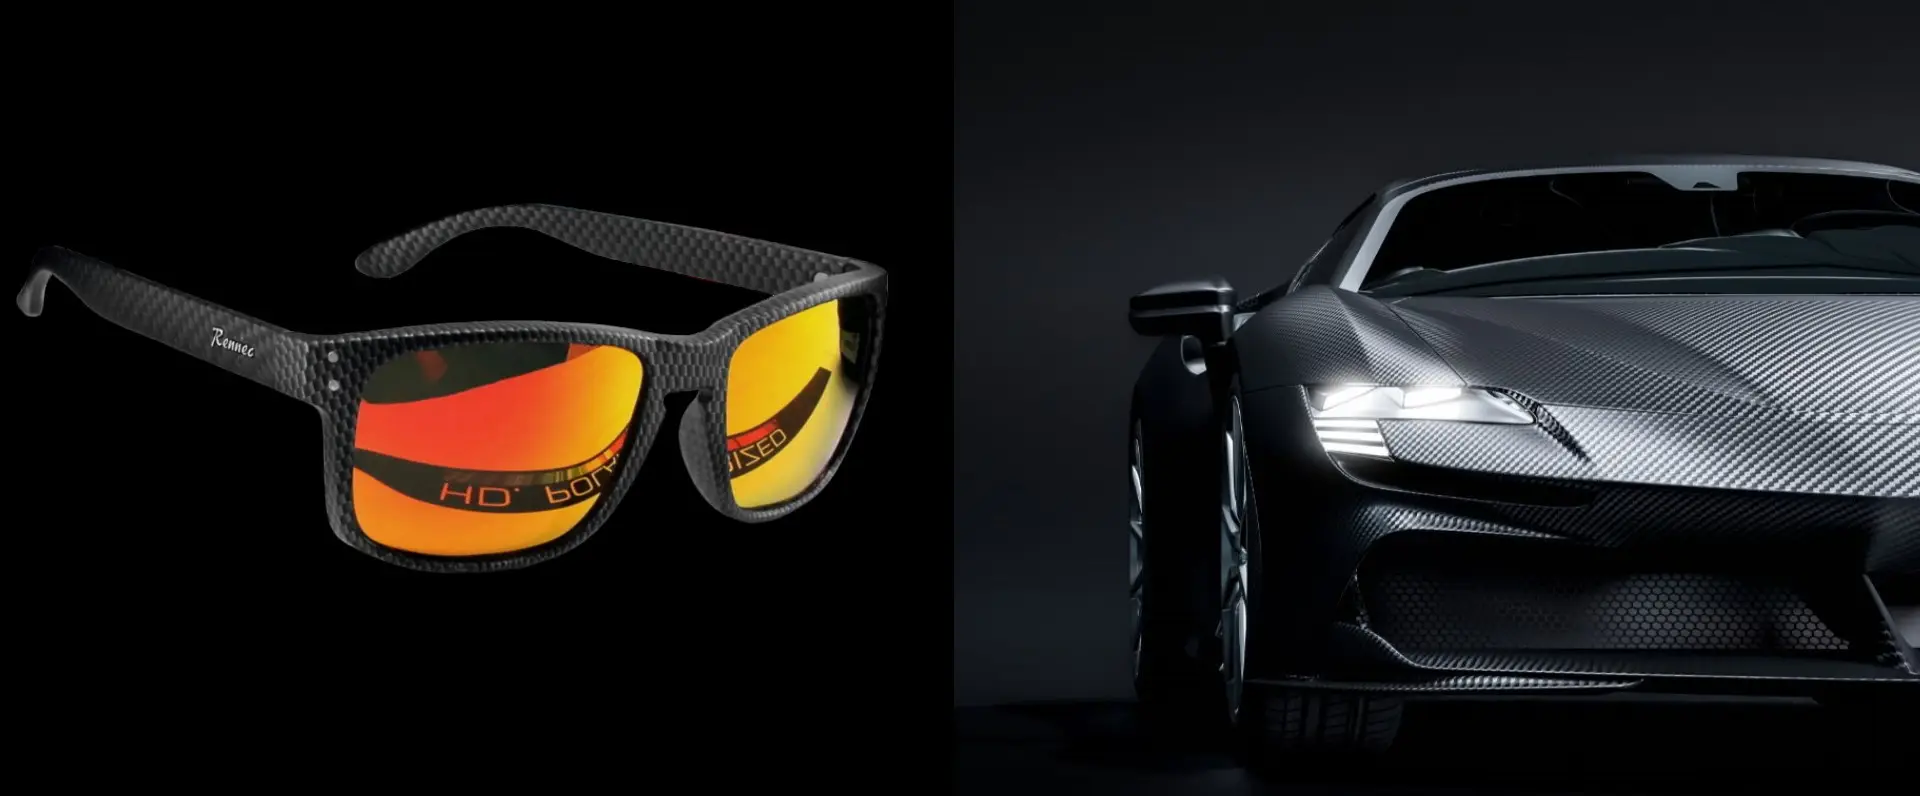 Motor-Sportbrillen Sonnenbrillen Bikerbrille jetzt bei Luxxada shoppen